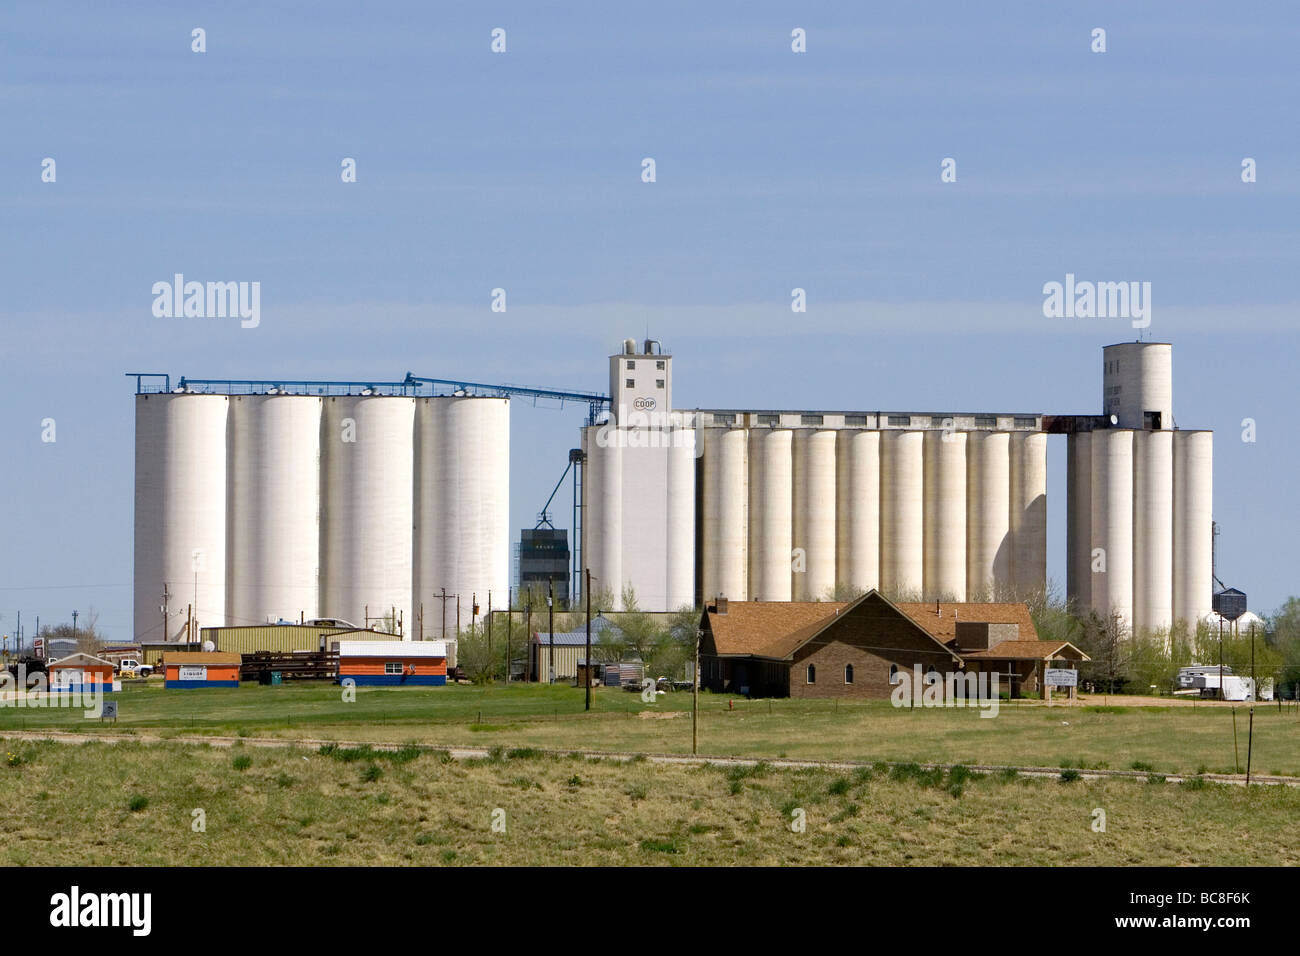 Grain elevators in Seibert Colorado USA Stock Photo